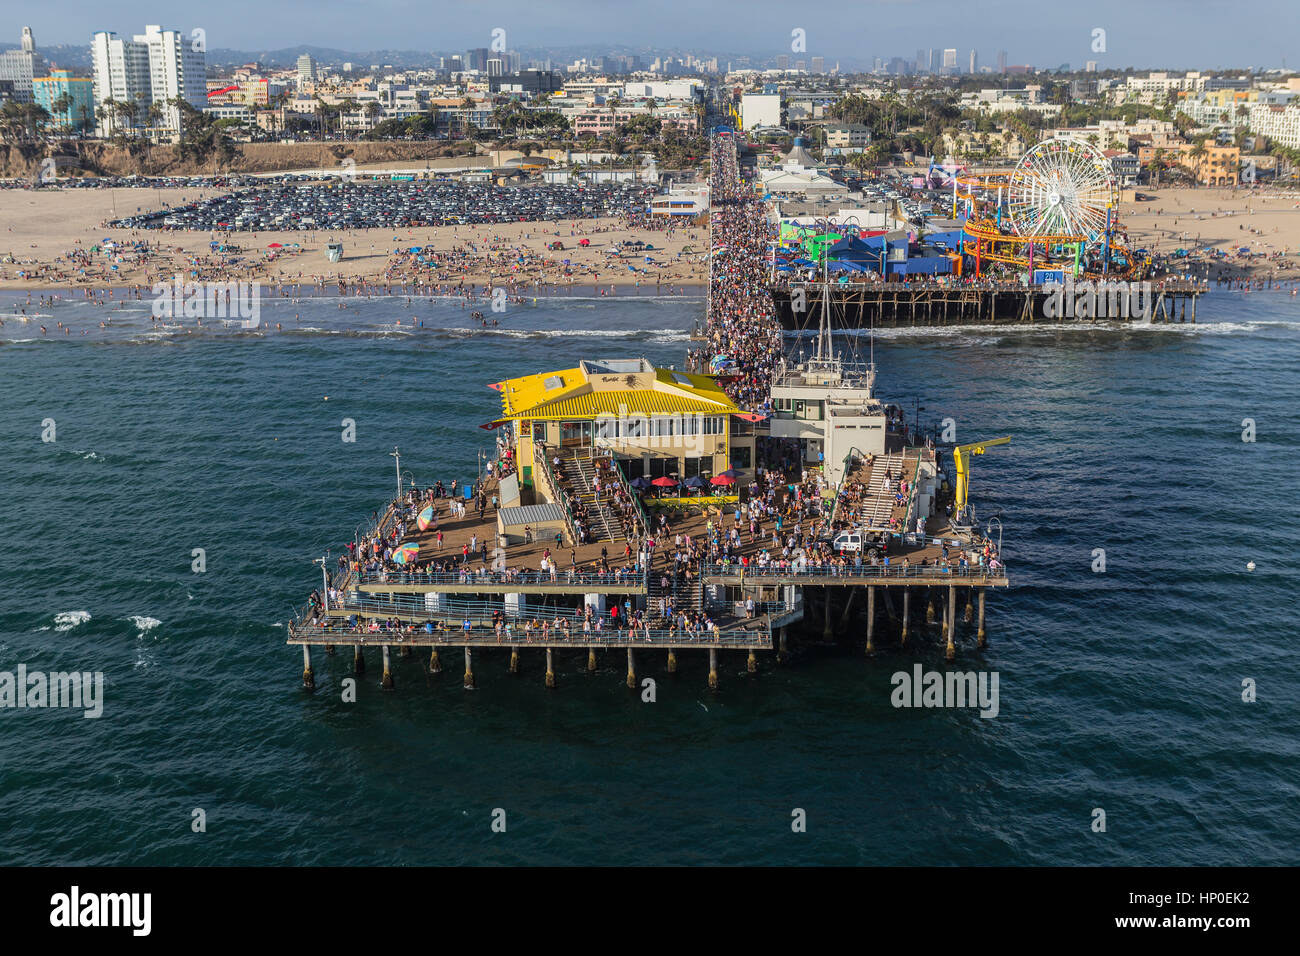 Santa Monica, Californie, USA - 6 août 2016 : de grandes foules de touristes d'été populaires sur la jetée de Santa Monica, près de Los Angeles. Banque D'Images